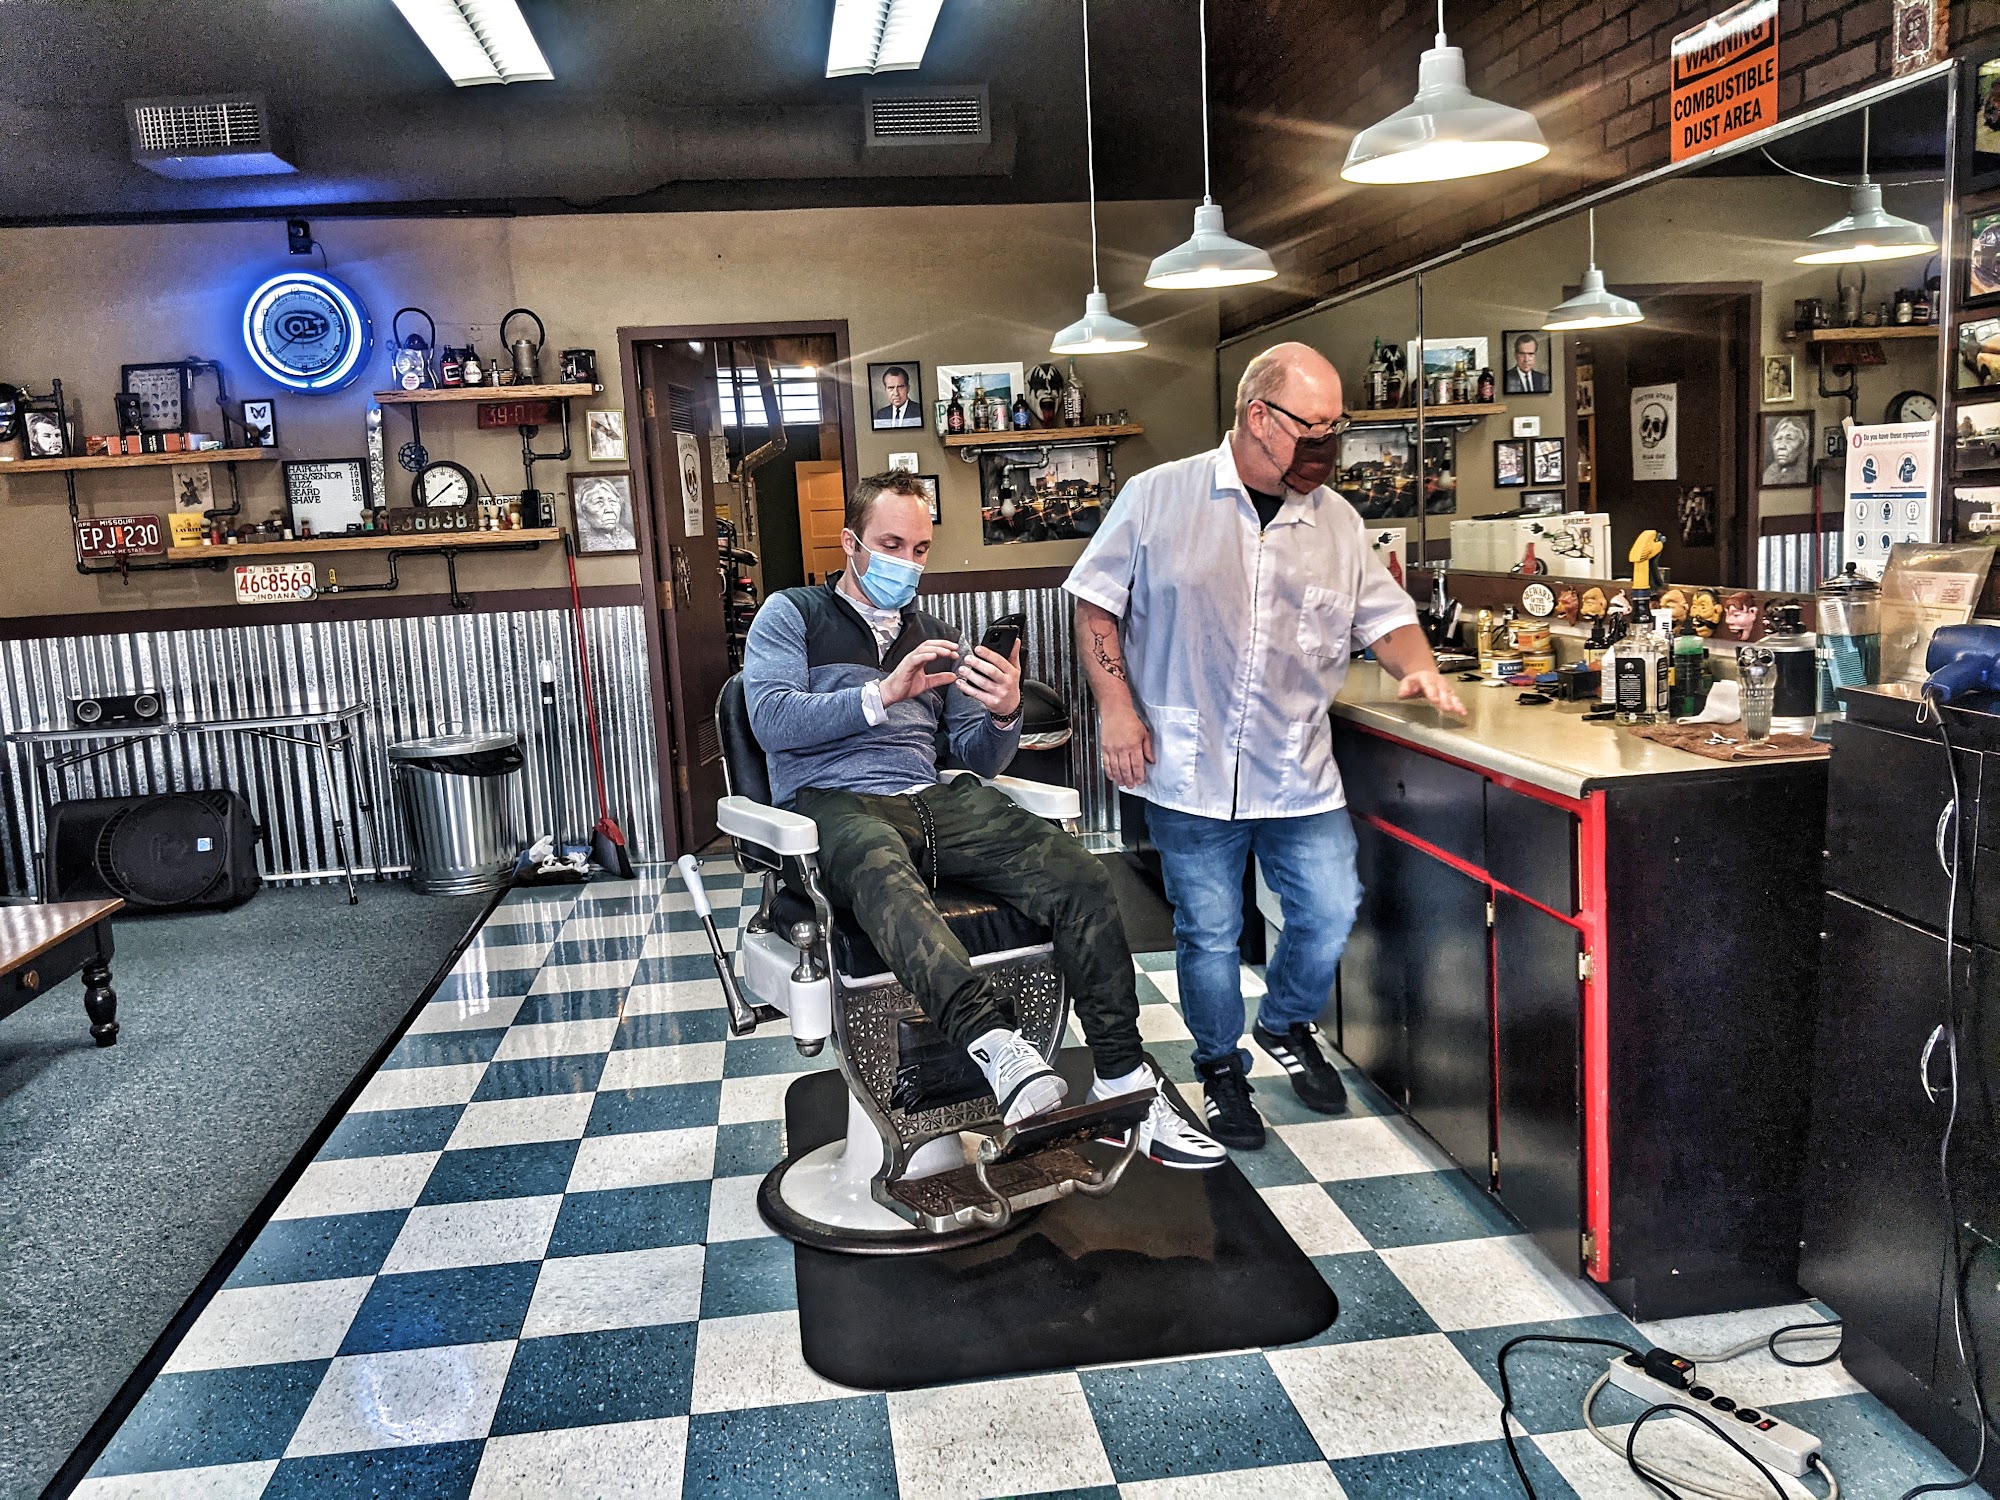 Singer Hill Barber Shop